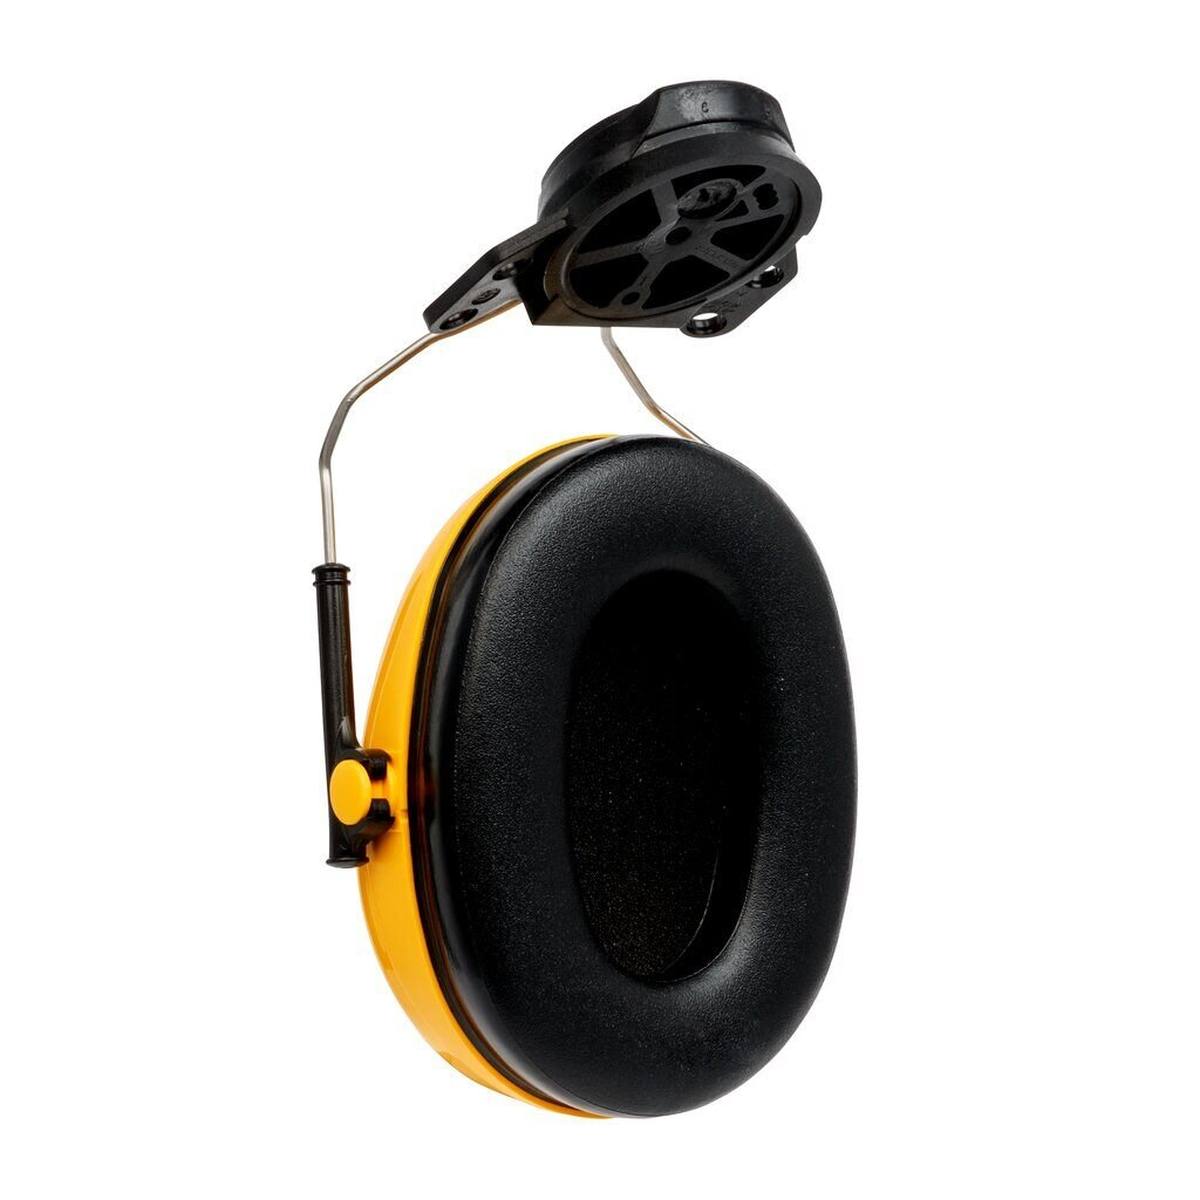 3M Peltor Optime I Kapselgehörschutz, Helmbefestigung, gelb, mit Helmadapter P3E (für alle 3M Helme, ausgenommen G2000), SNR = 26 dB, H510P3E